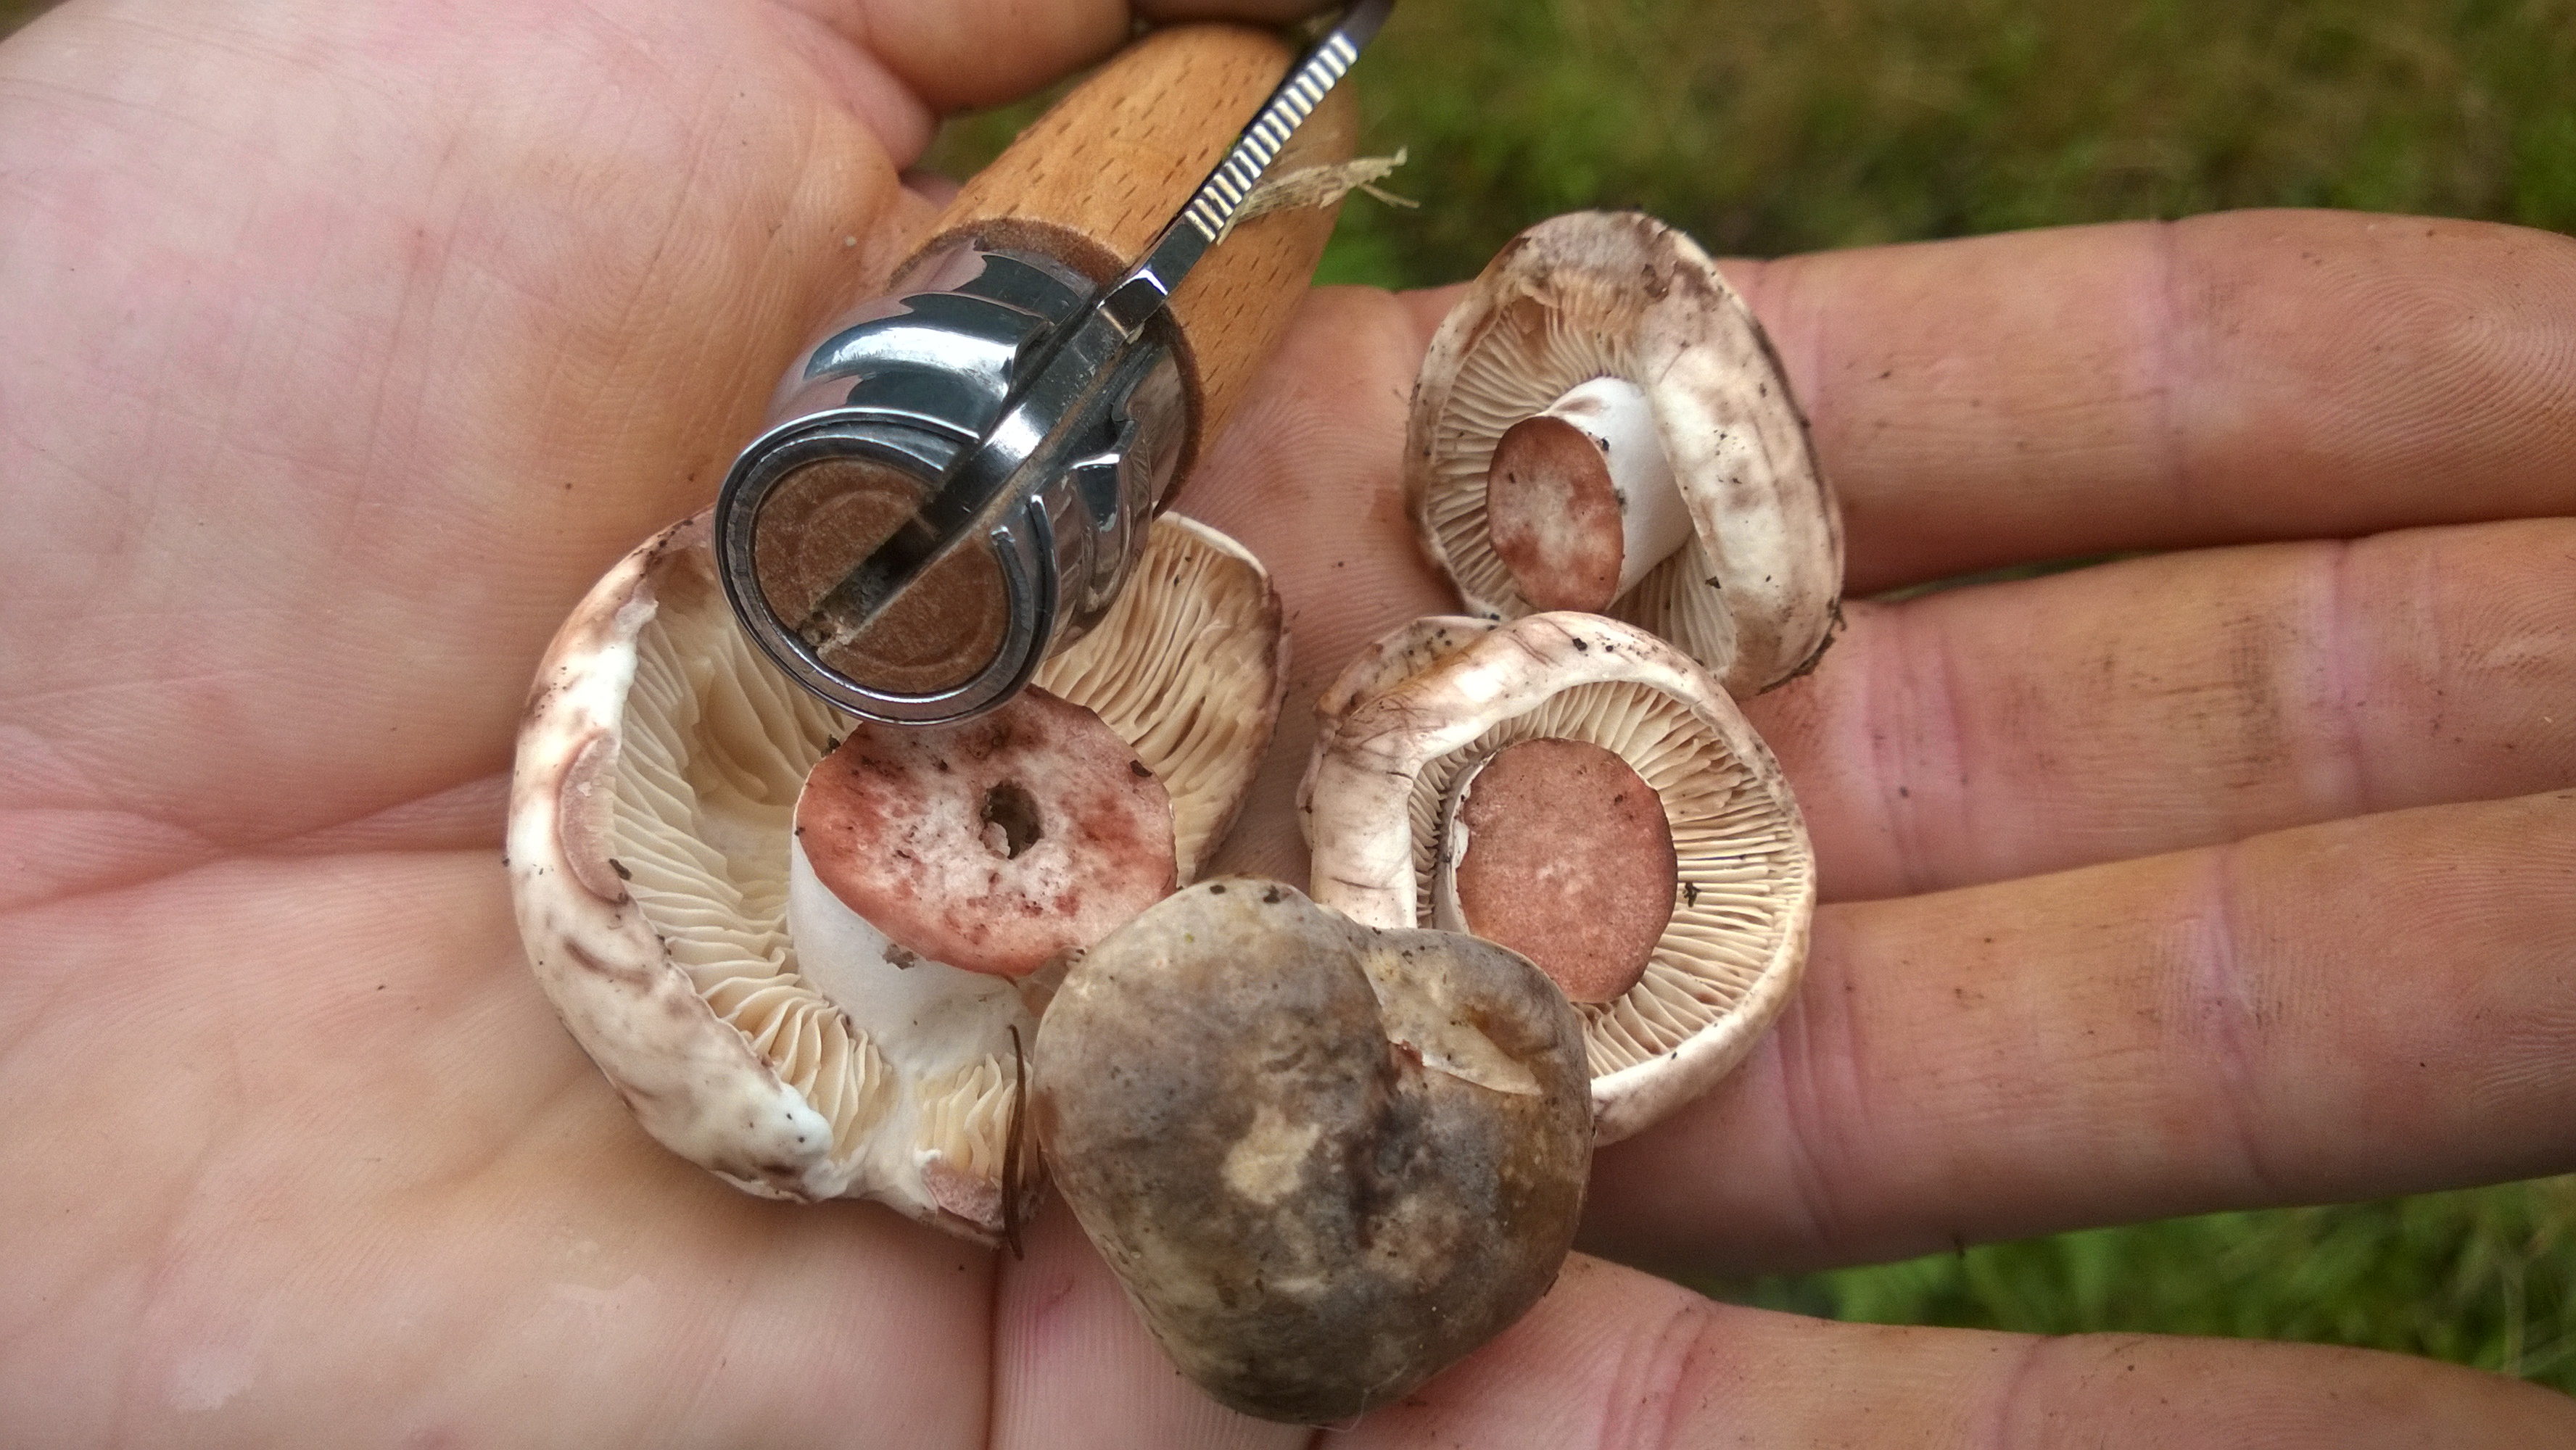 Wooden Mushroom Knife, Mushroom Brush, Foraging Tools, Forage